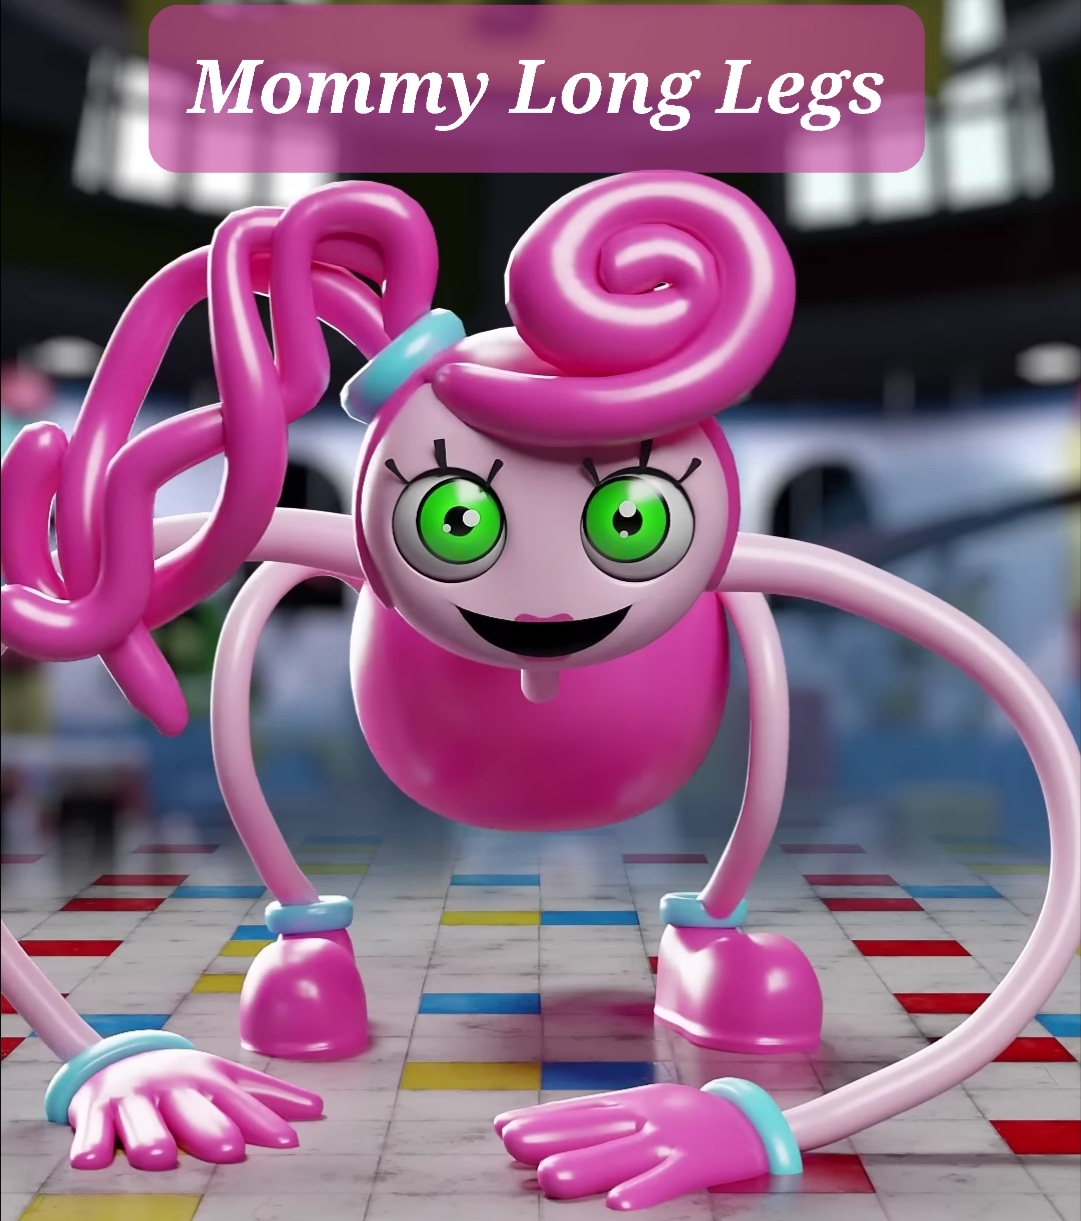 Mommy Long Legs by earlrd on DeviantArt